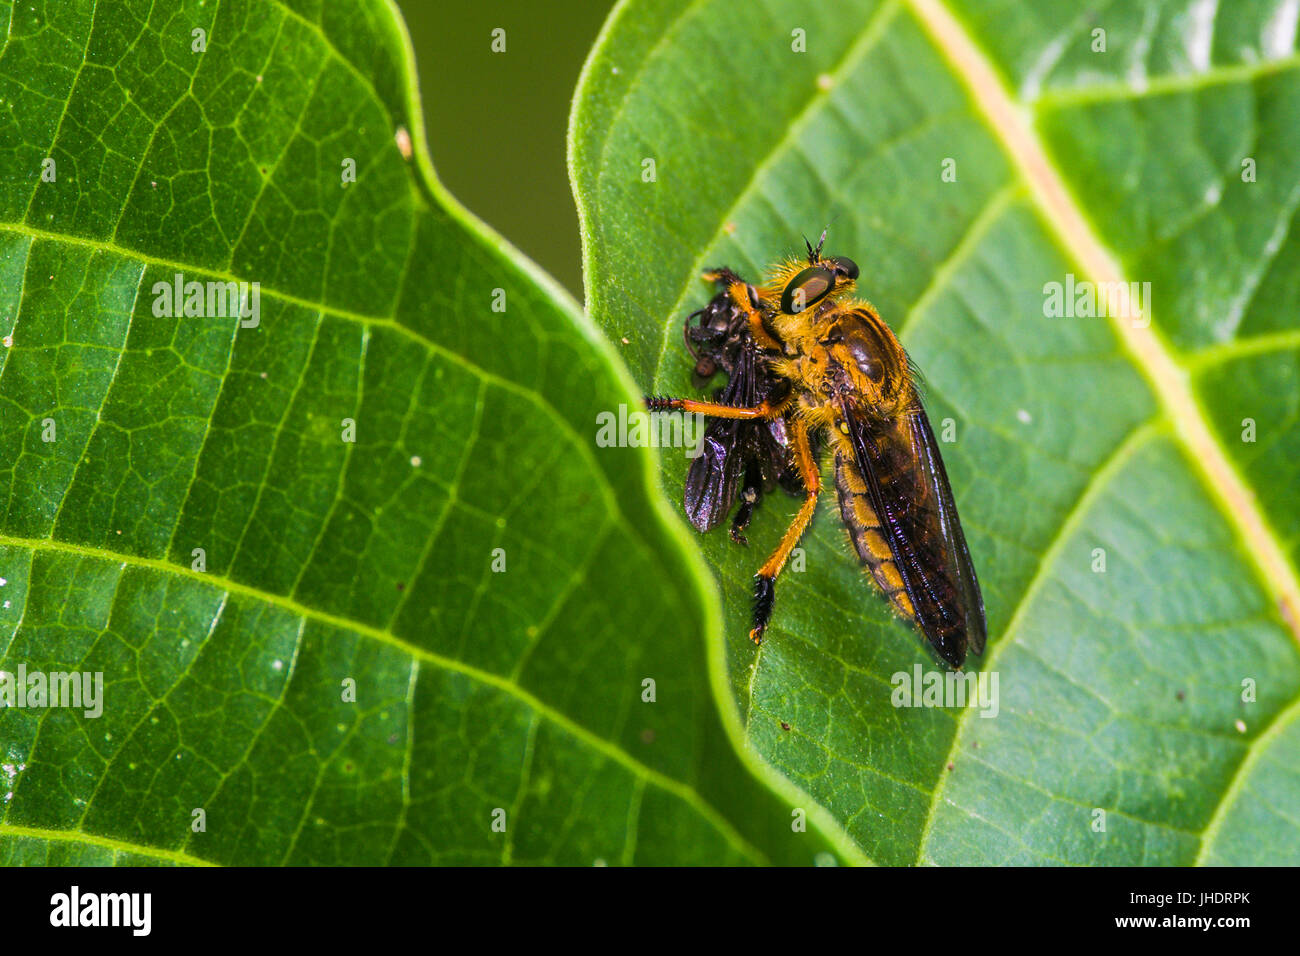 Die Assasin-Fliege isst eine kleine schwarze Wespe Stockfoto